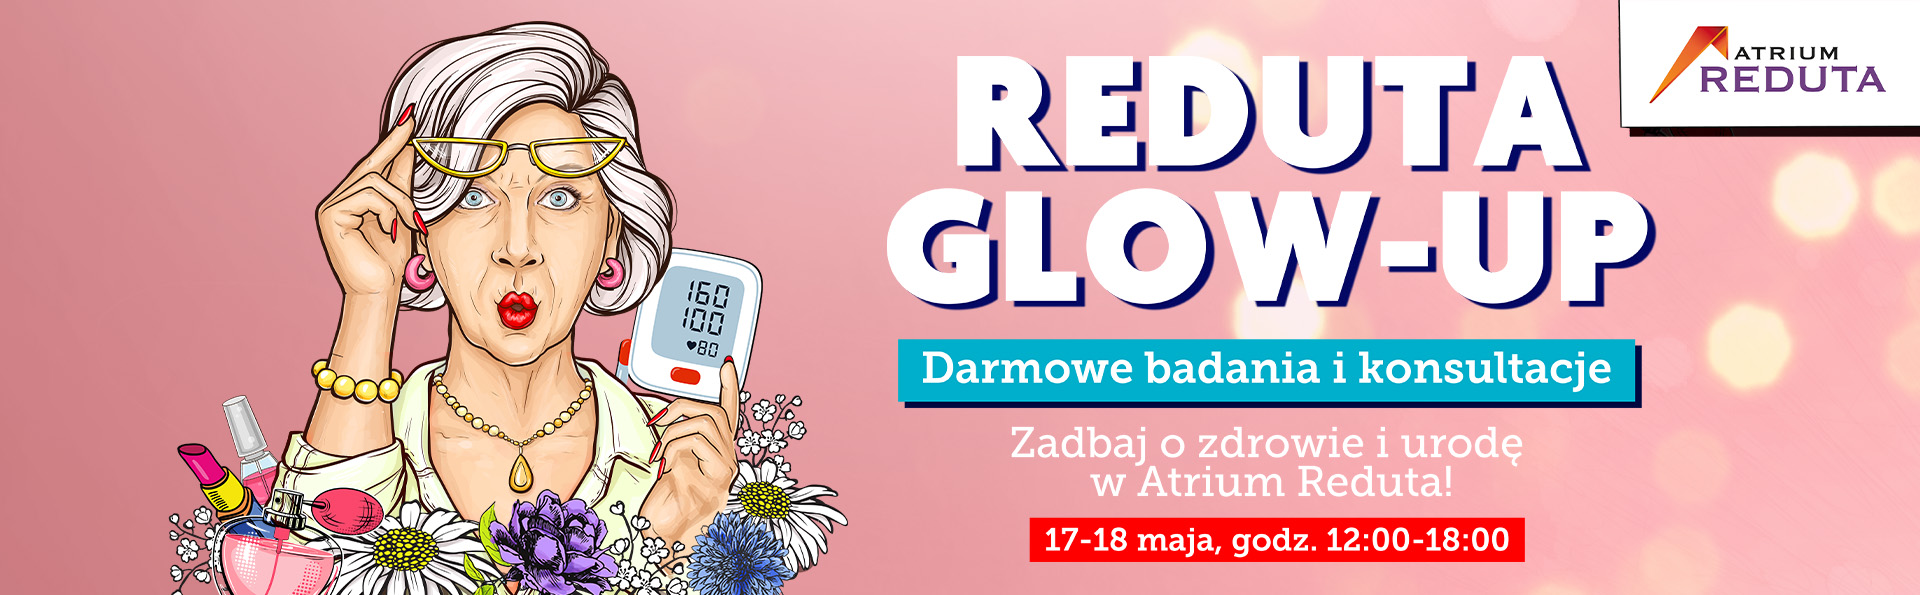 Reduta Glow-Up – zadbaj o zdrowie i urodę w Atrium Reduta!